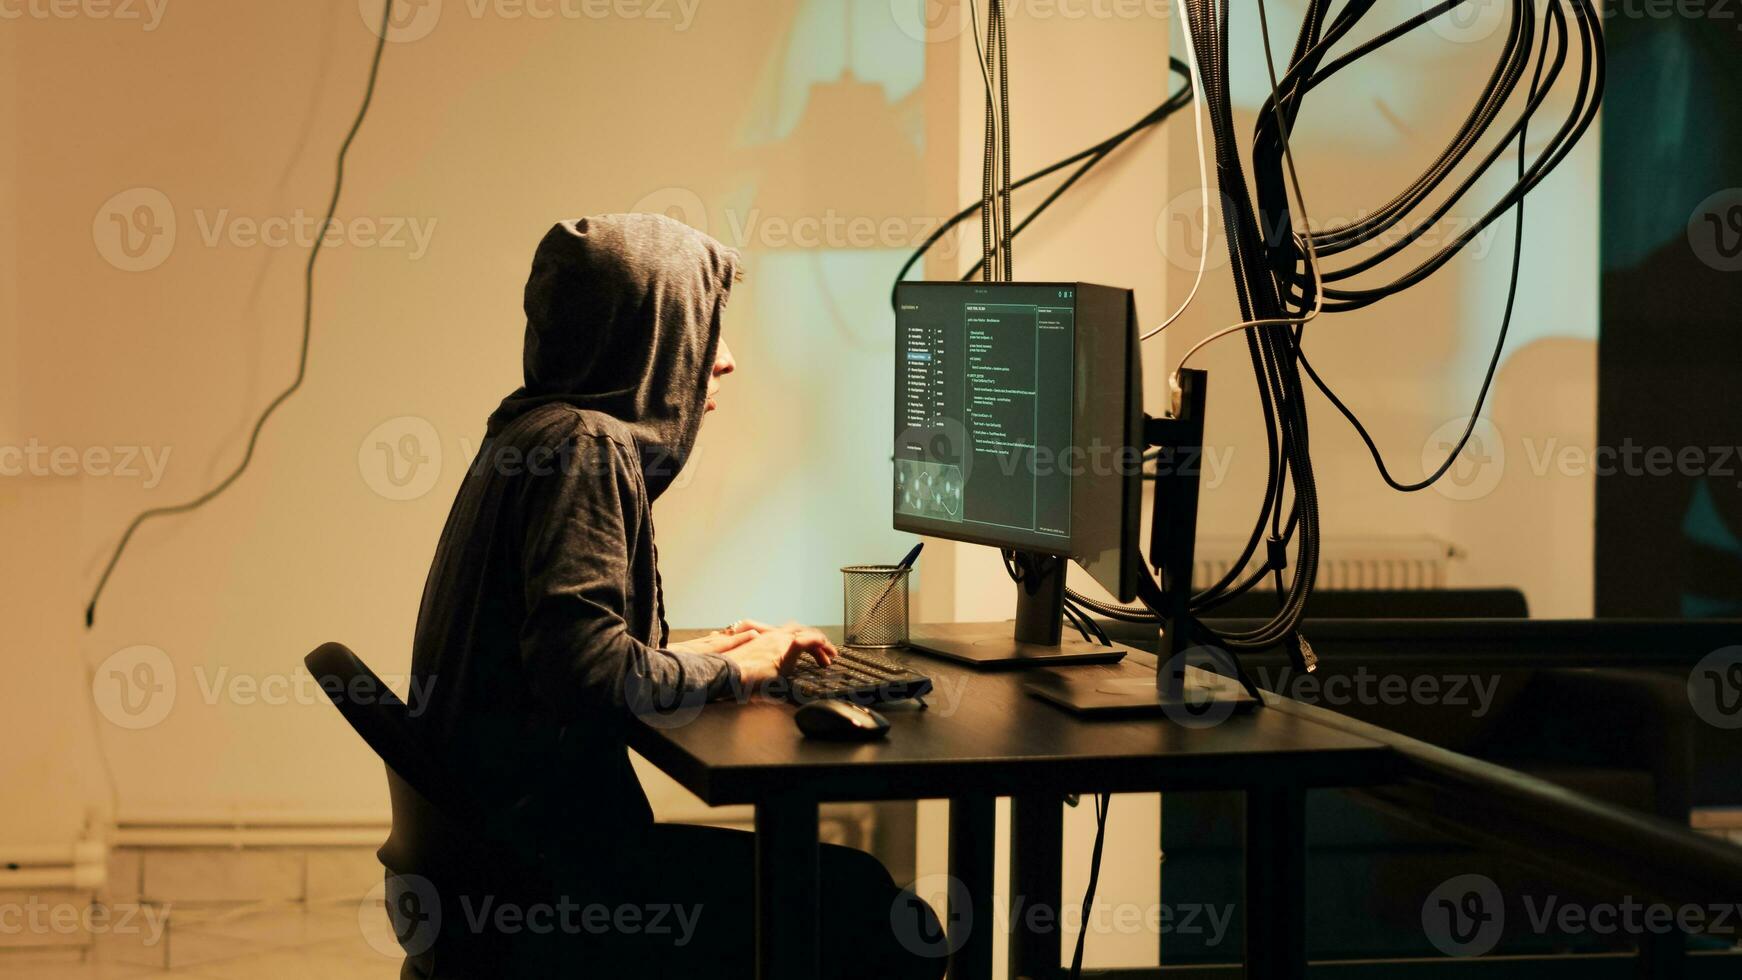 vrouw hacker plegen Cyber aanval Aan server firewall, winnen toegang naar stelen regering informatie. jong vrouw aanplant trojan virus en malware, aan het doen cyberpesten en identiteit diefstal. foto